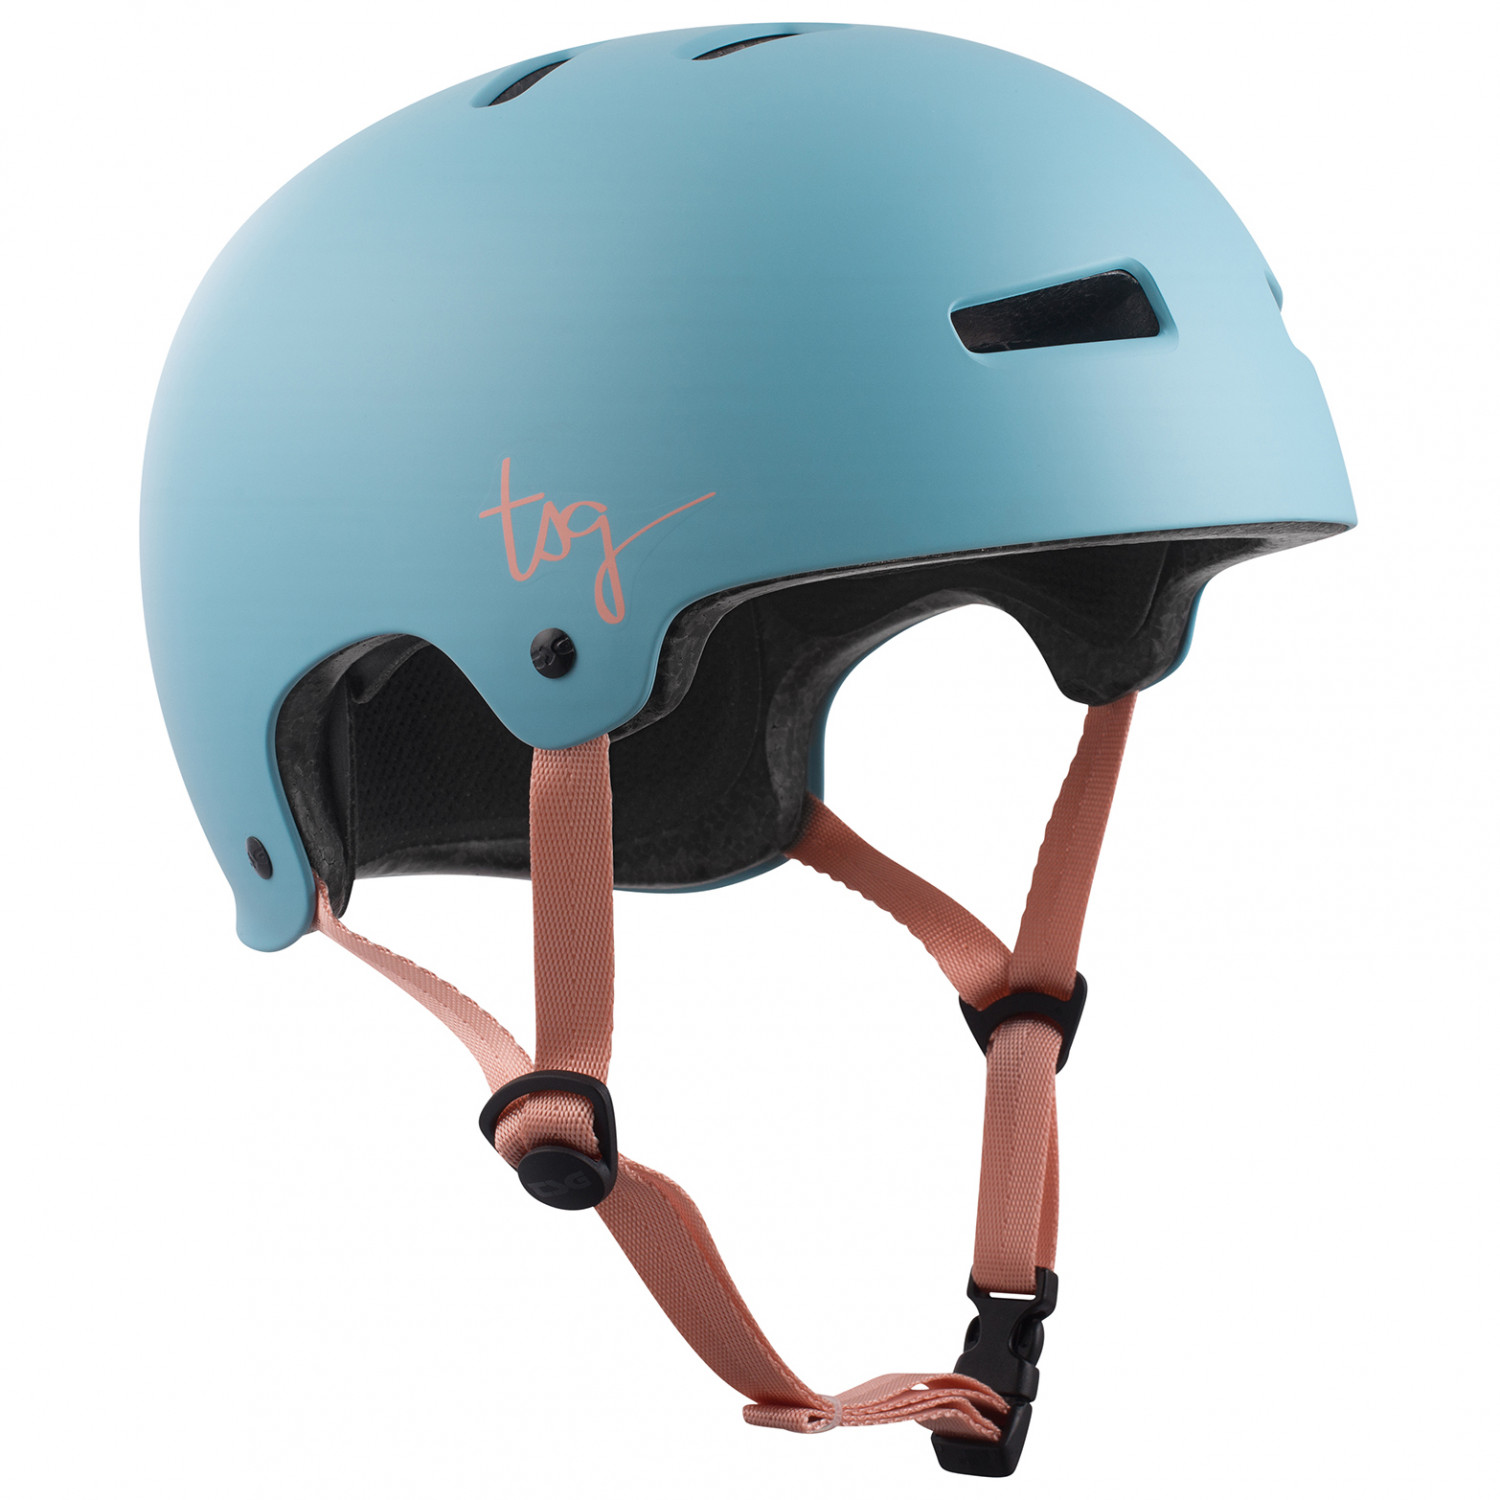 Велосипедный шлем Tsg Women's Evolution Solid Color, цвет Satin Porcelain Blue